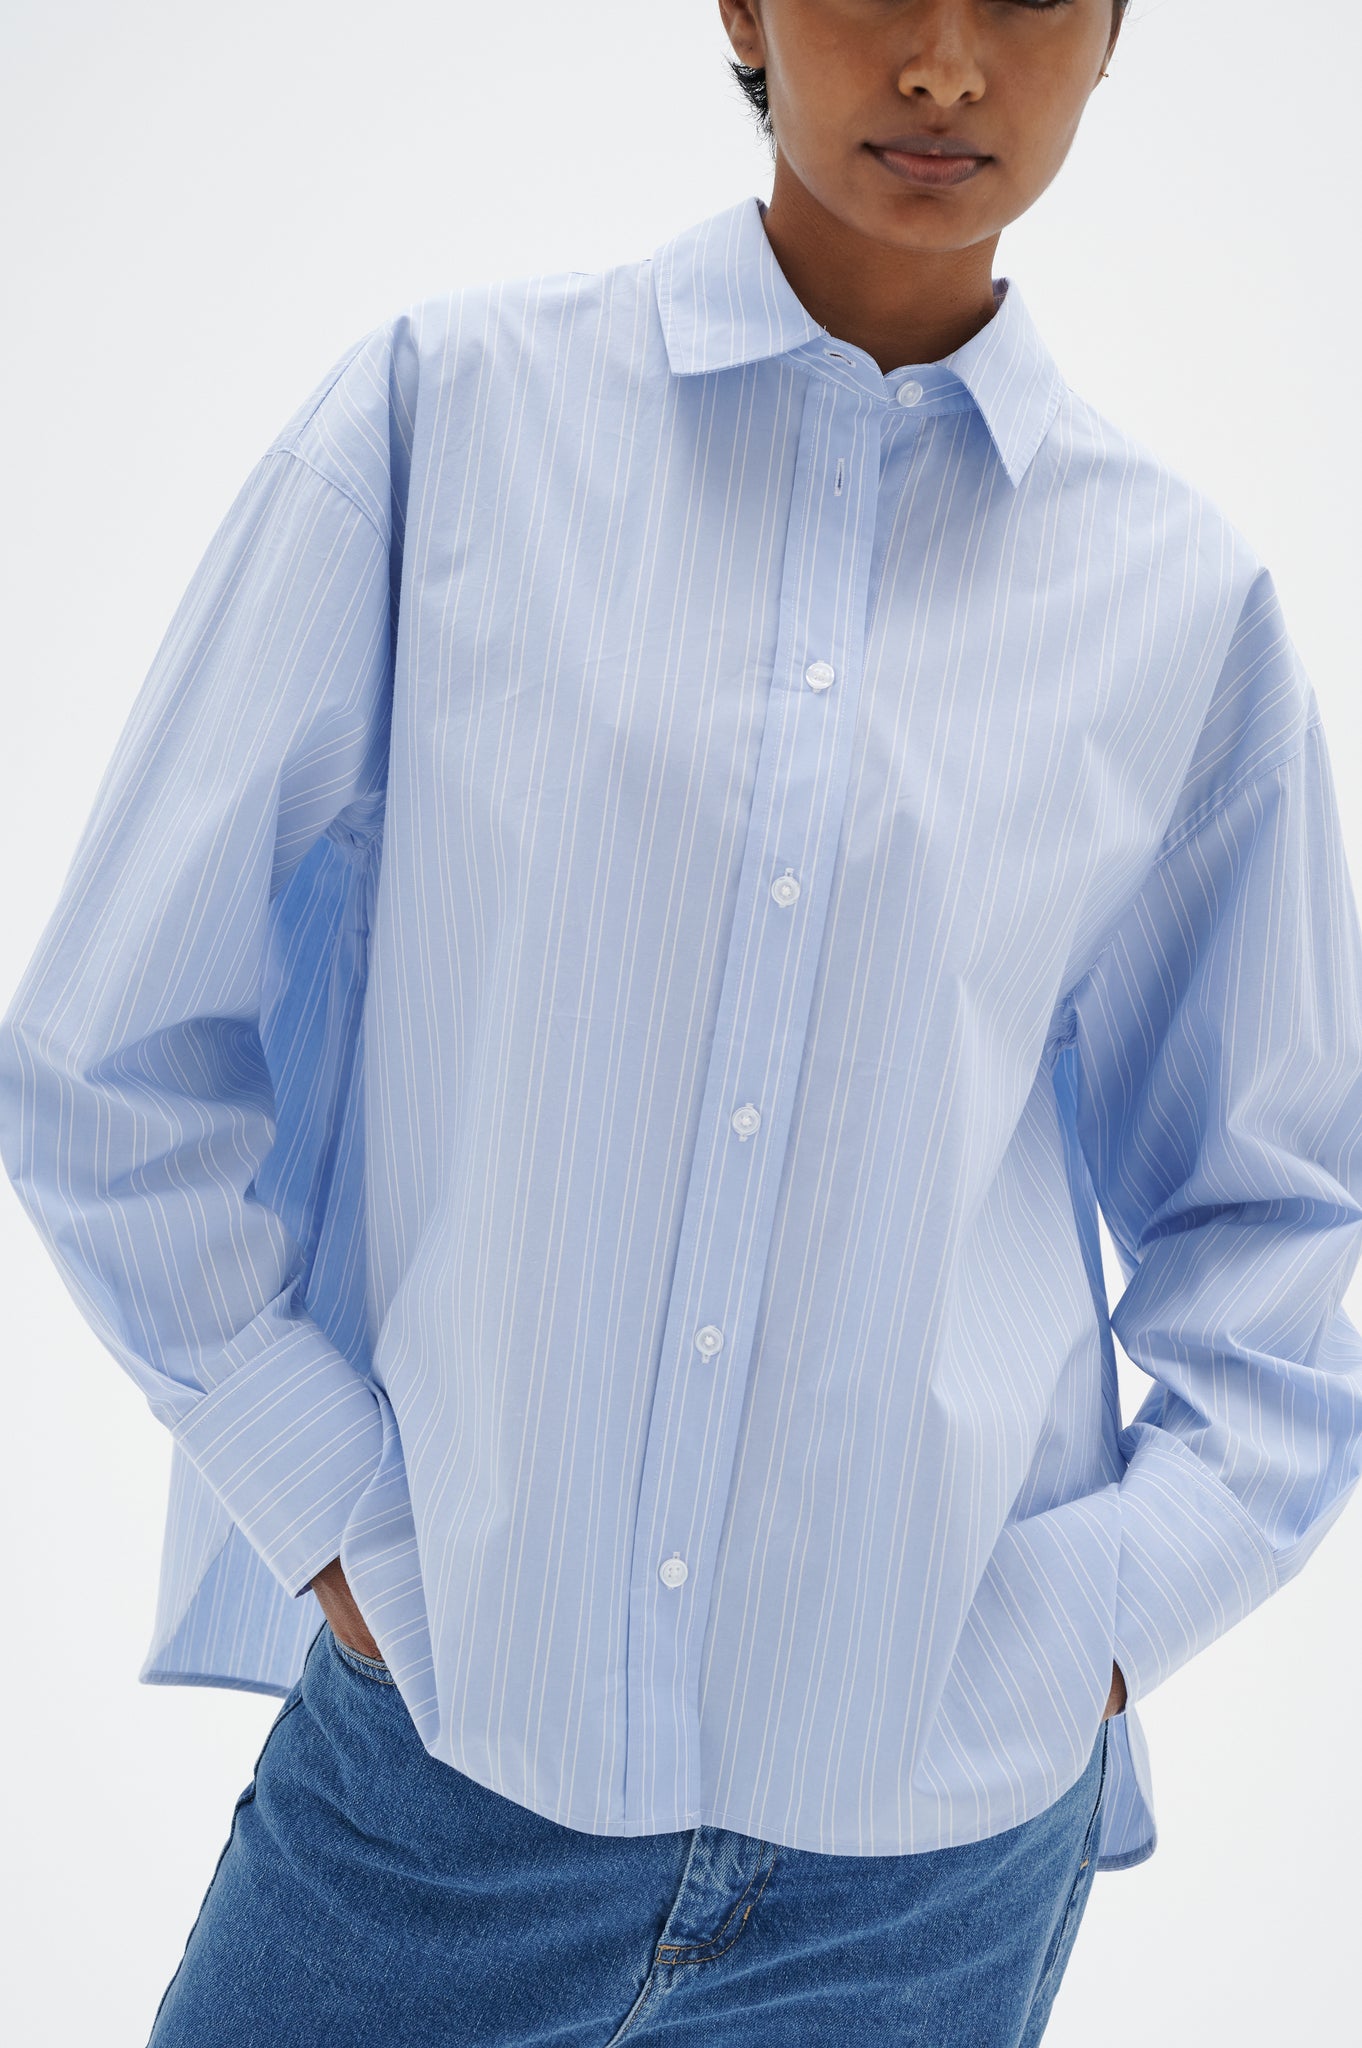 In Wear Rimma Shirt, Light Blue Stripe